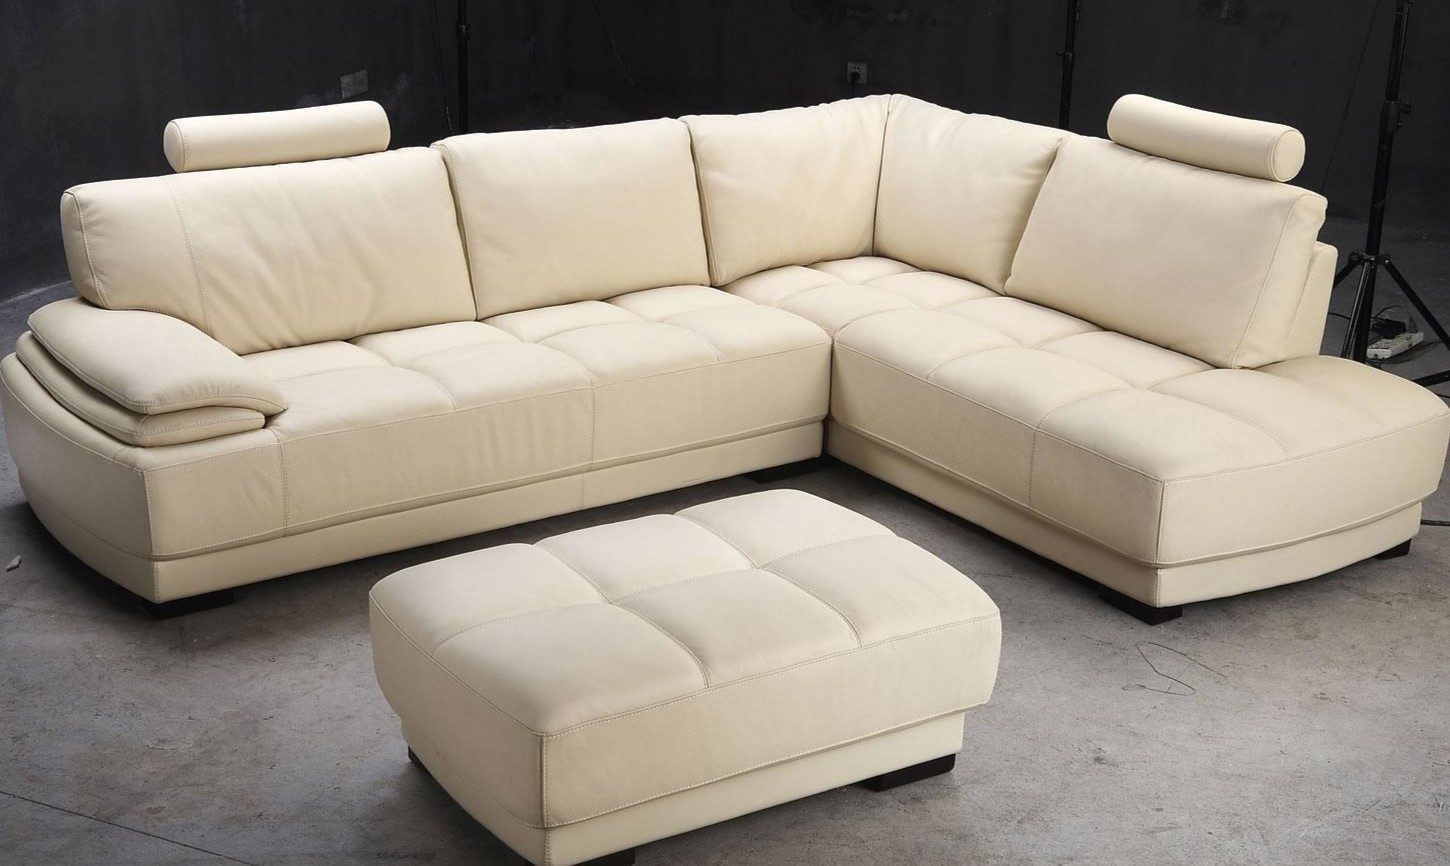 Белый угловой диван можно использовать в интерьере минимализм и сканди